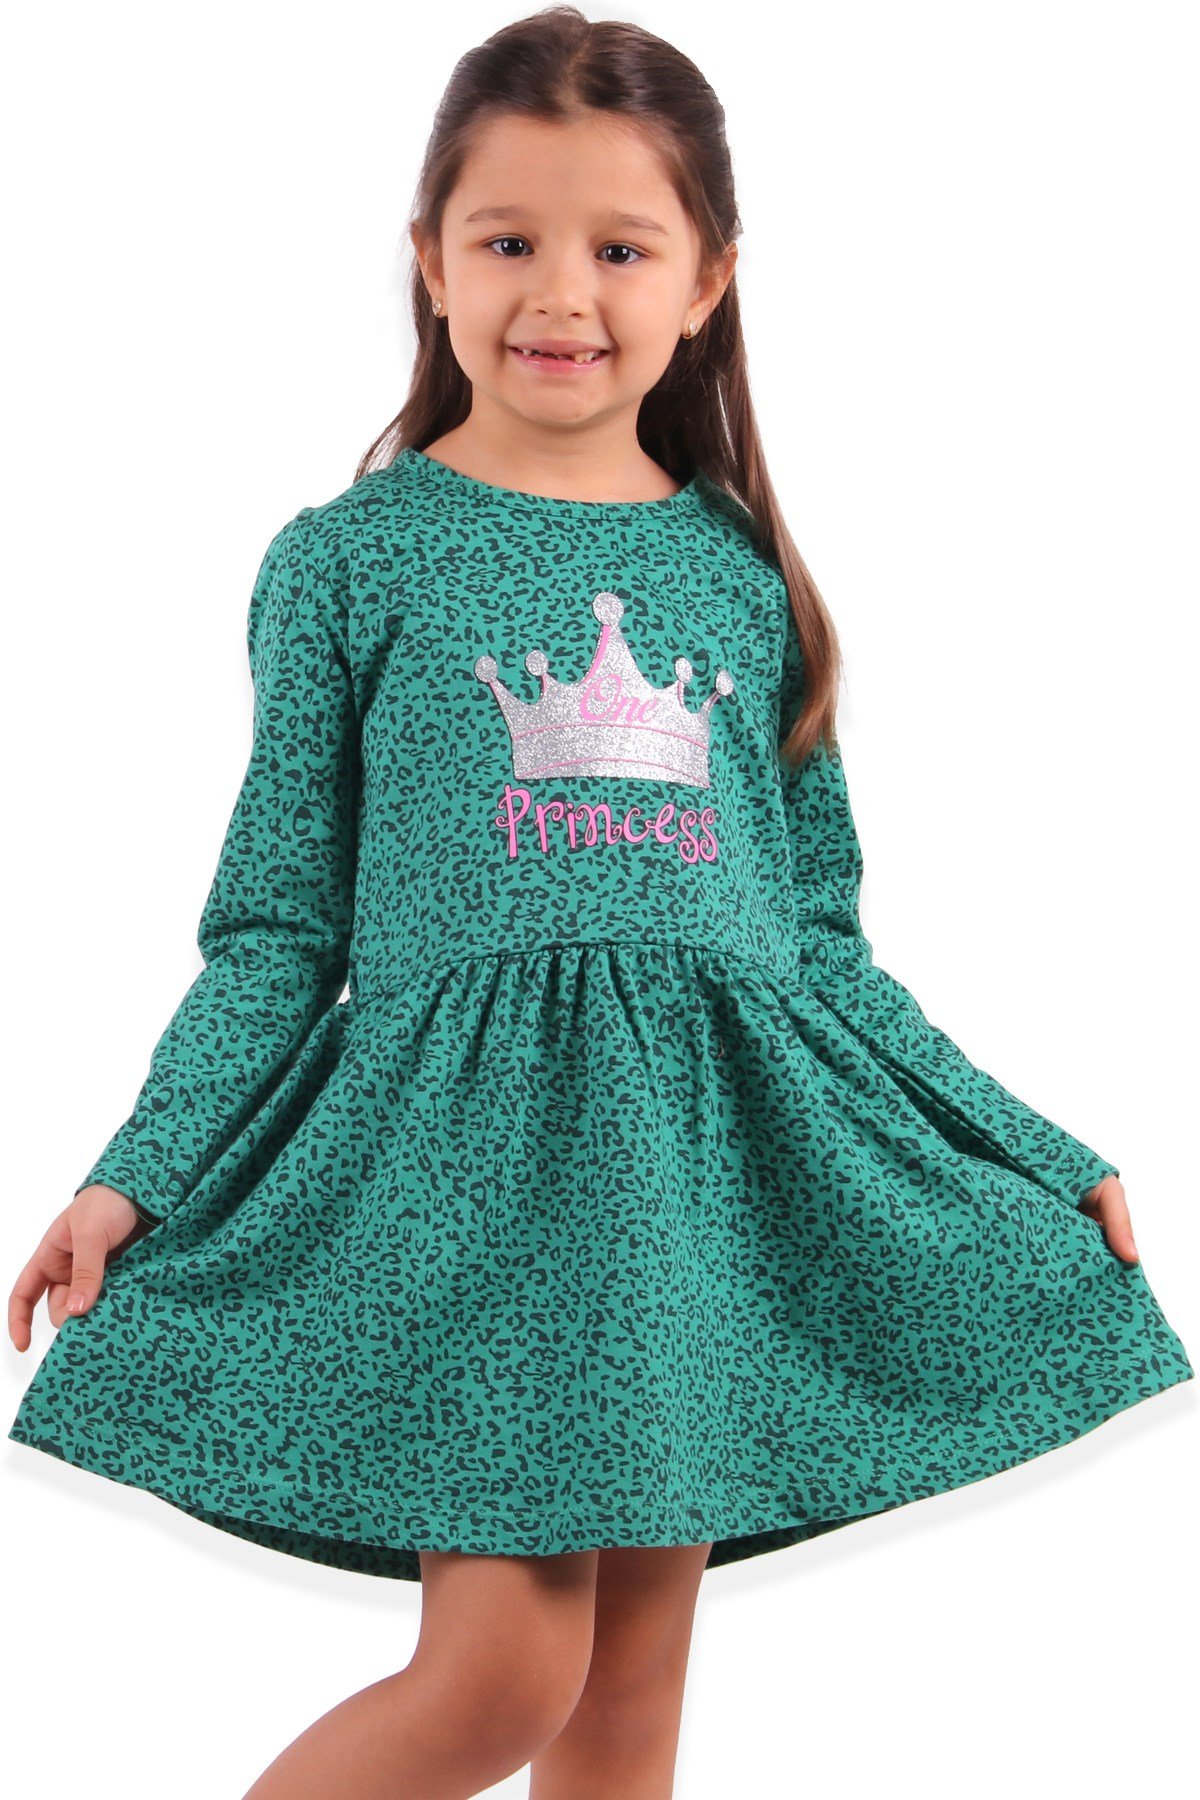 Kız Çocuk Elbise Prenses Baskılı Yeşil (3-5 Yaş)